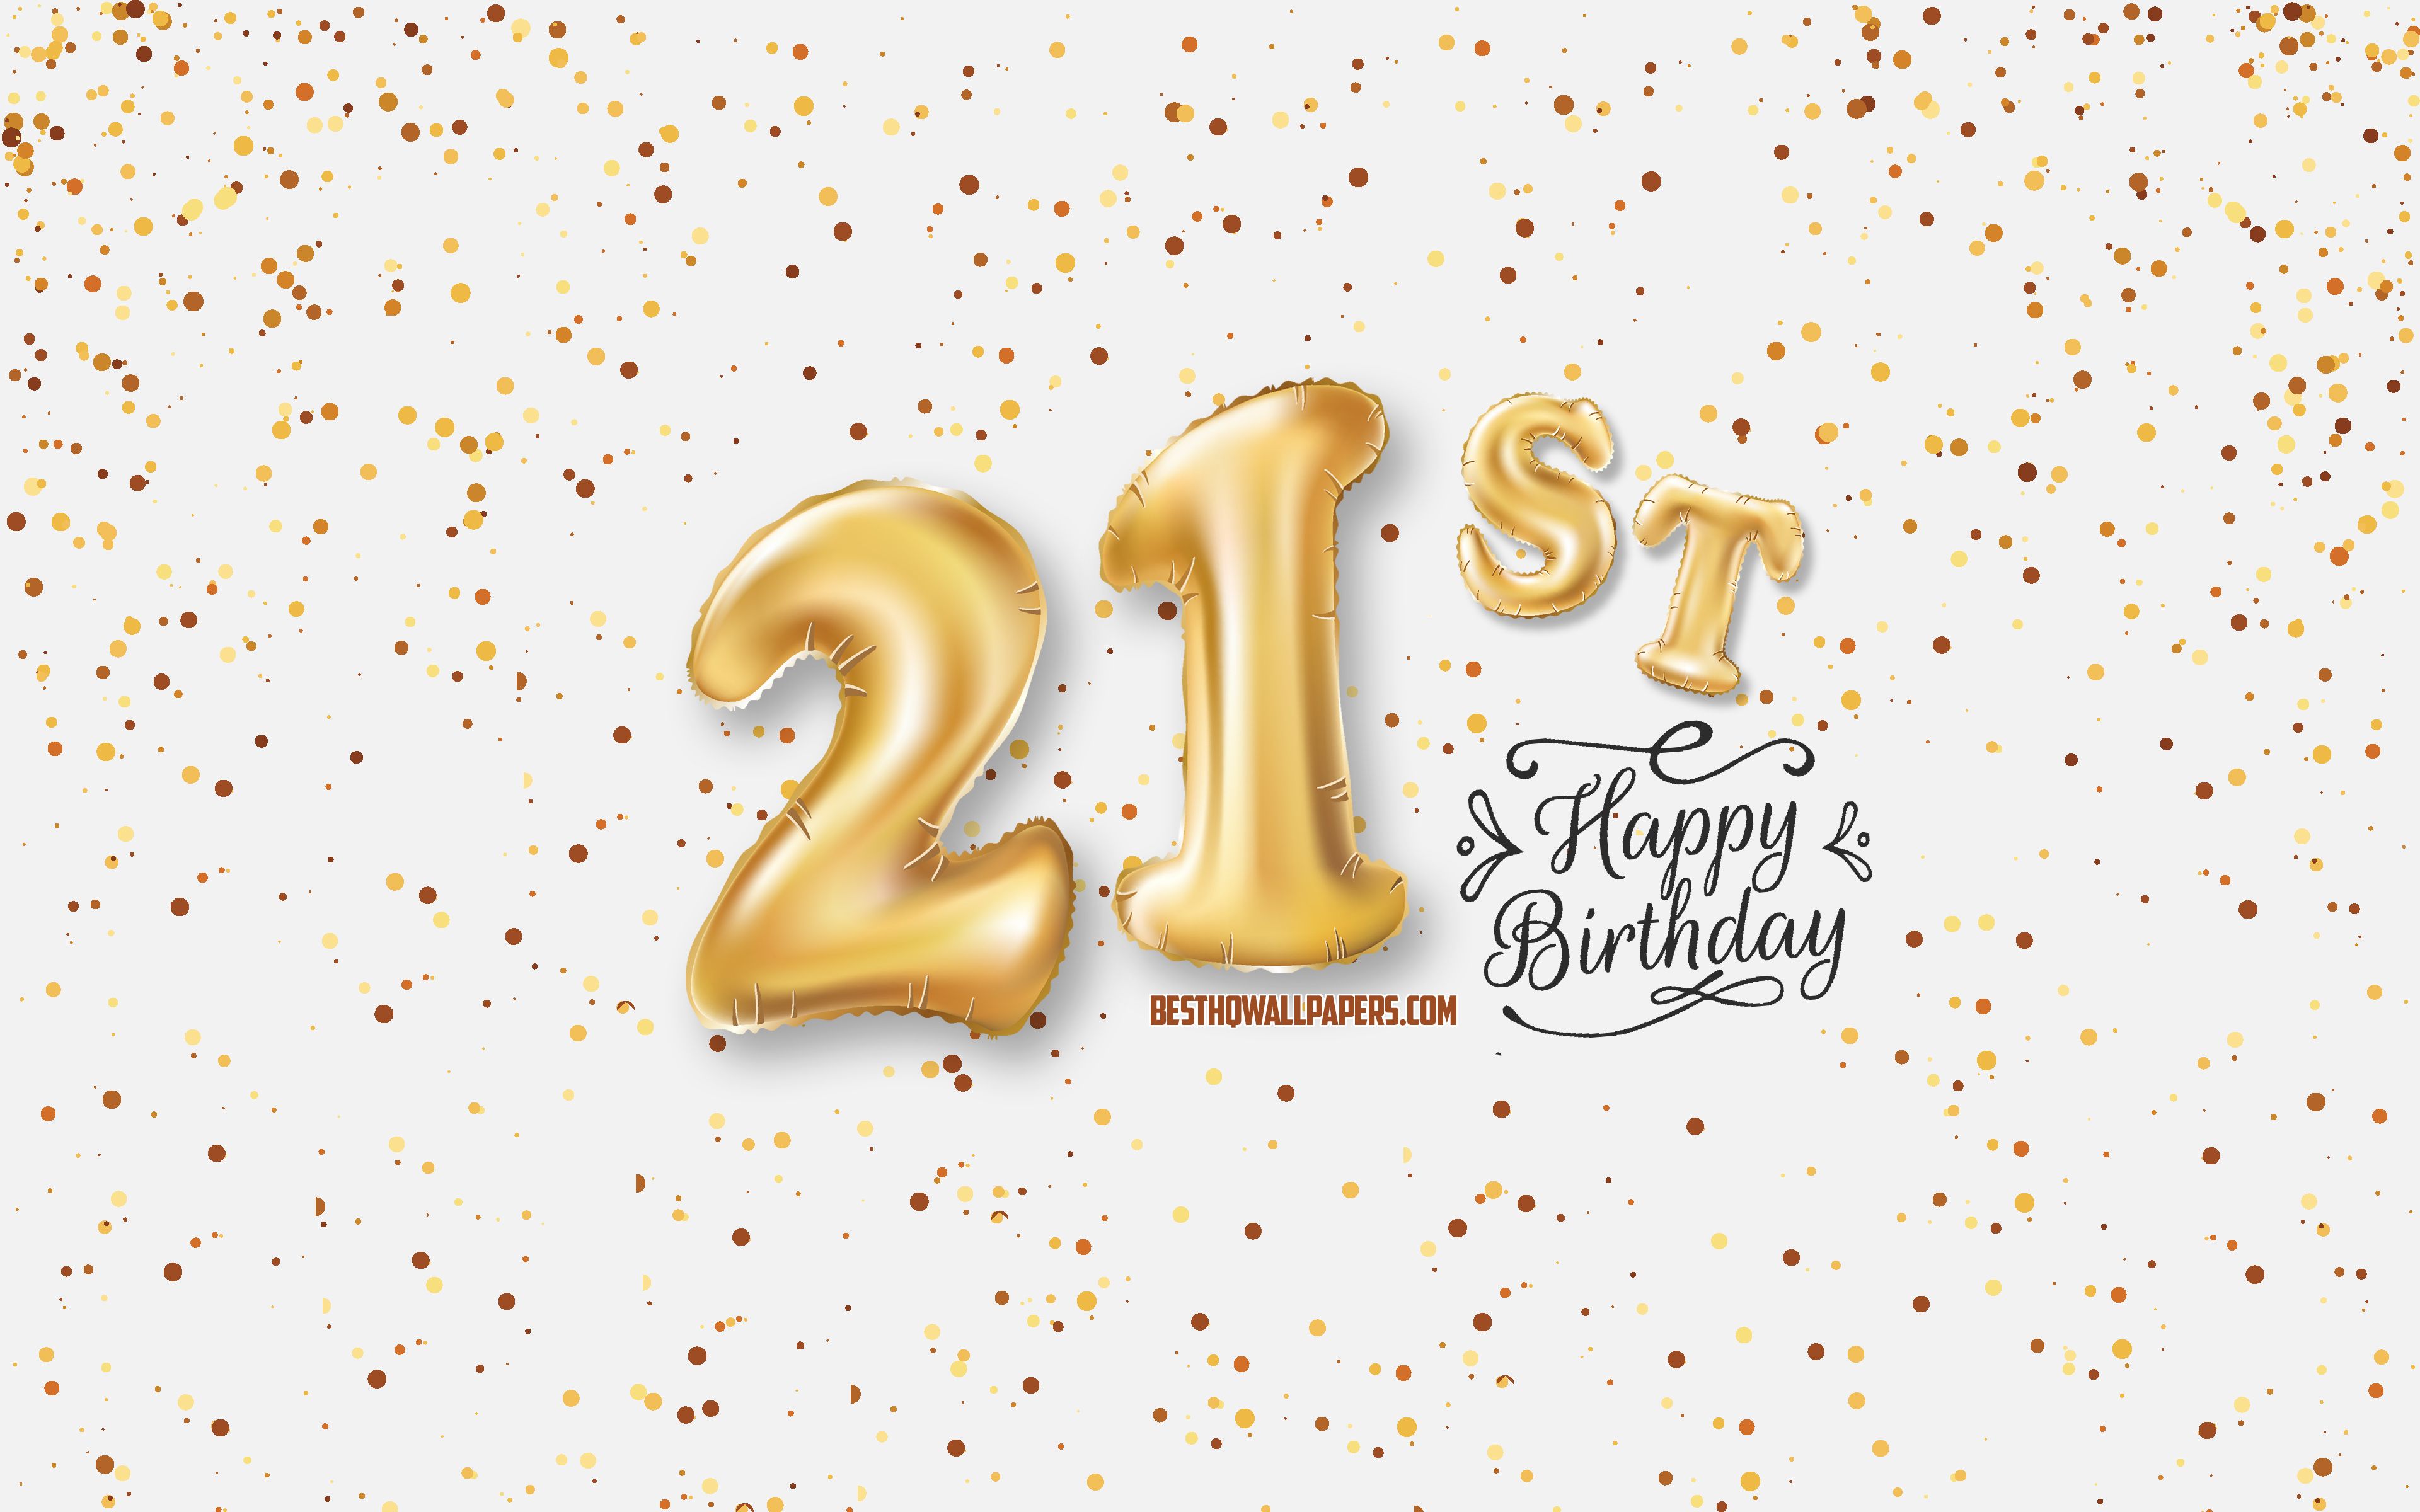 Tổ chức sinh nhật lần thứ 21 của bạn với những hình nền độc đáo trên Wallpaper Cave! Dễ dàng tìm kiếm và tải về những bức ảnh đẹp nhất để tụi bạn có thể chia sẻ mừng tuổi mới của bạn!